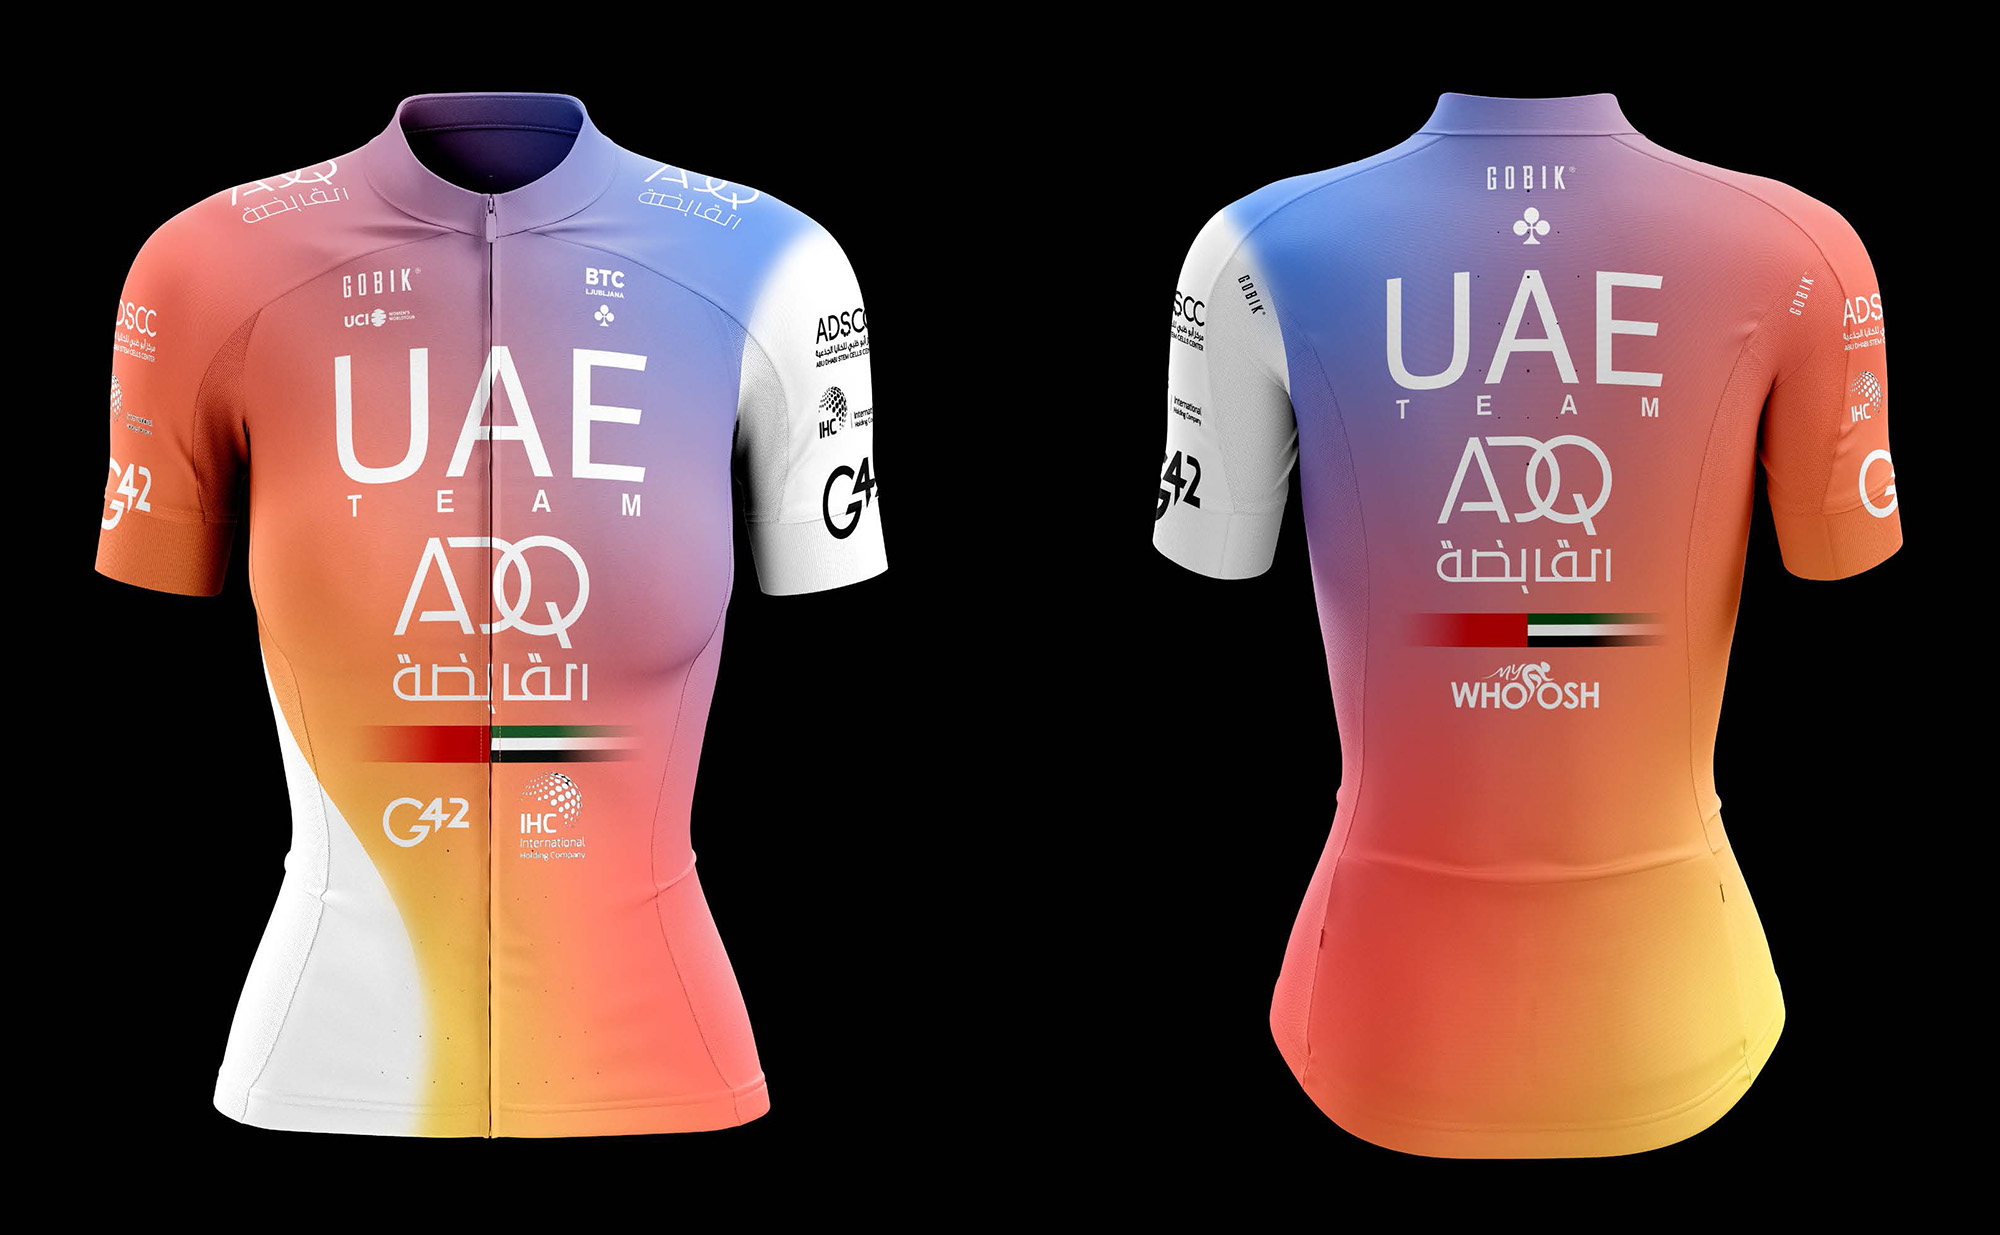 Две сильные россиянки вошли в состав женской велокоманды UAE Team ADQ